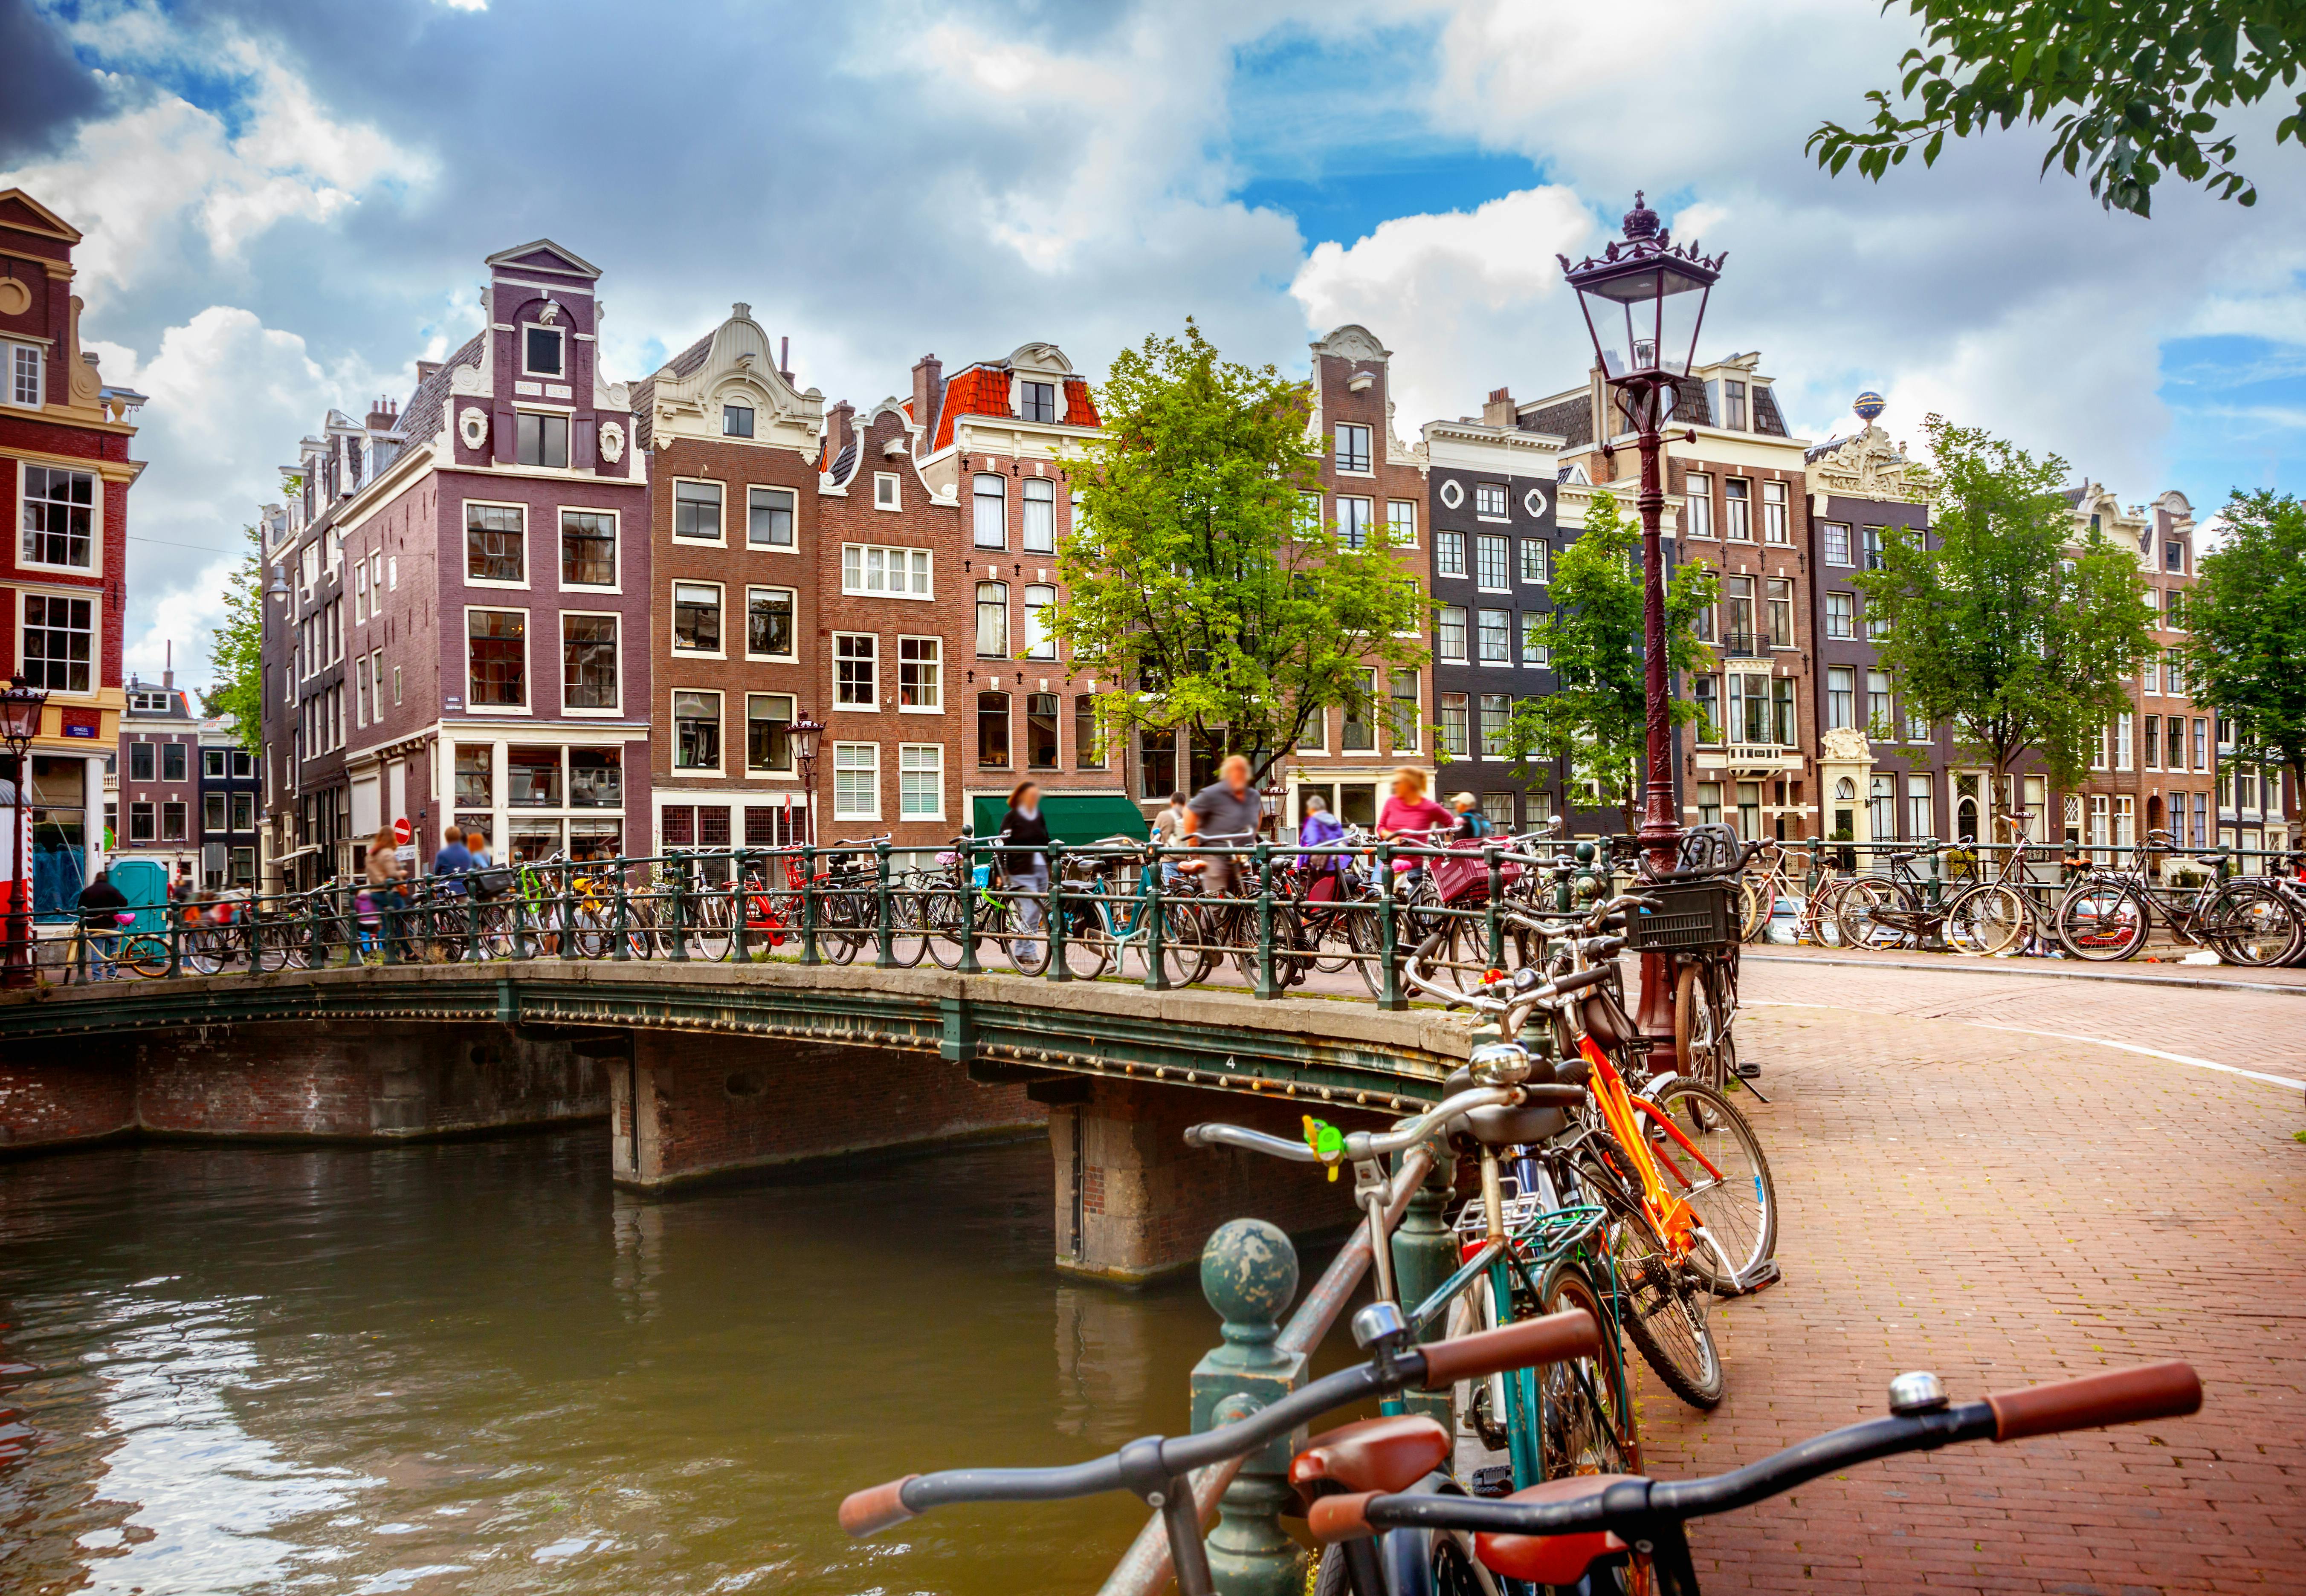 48-Stunden-Fahrradverleih in Amsterdam mit Stadtplan